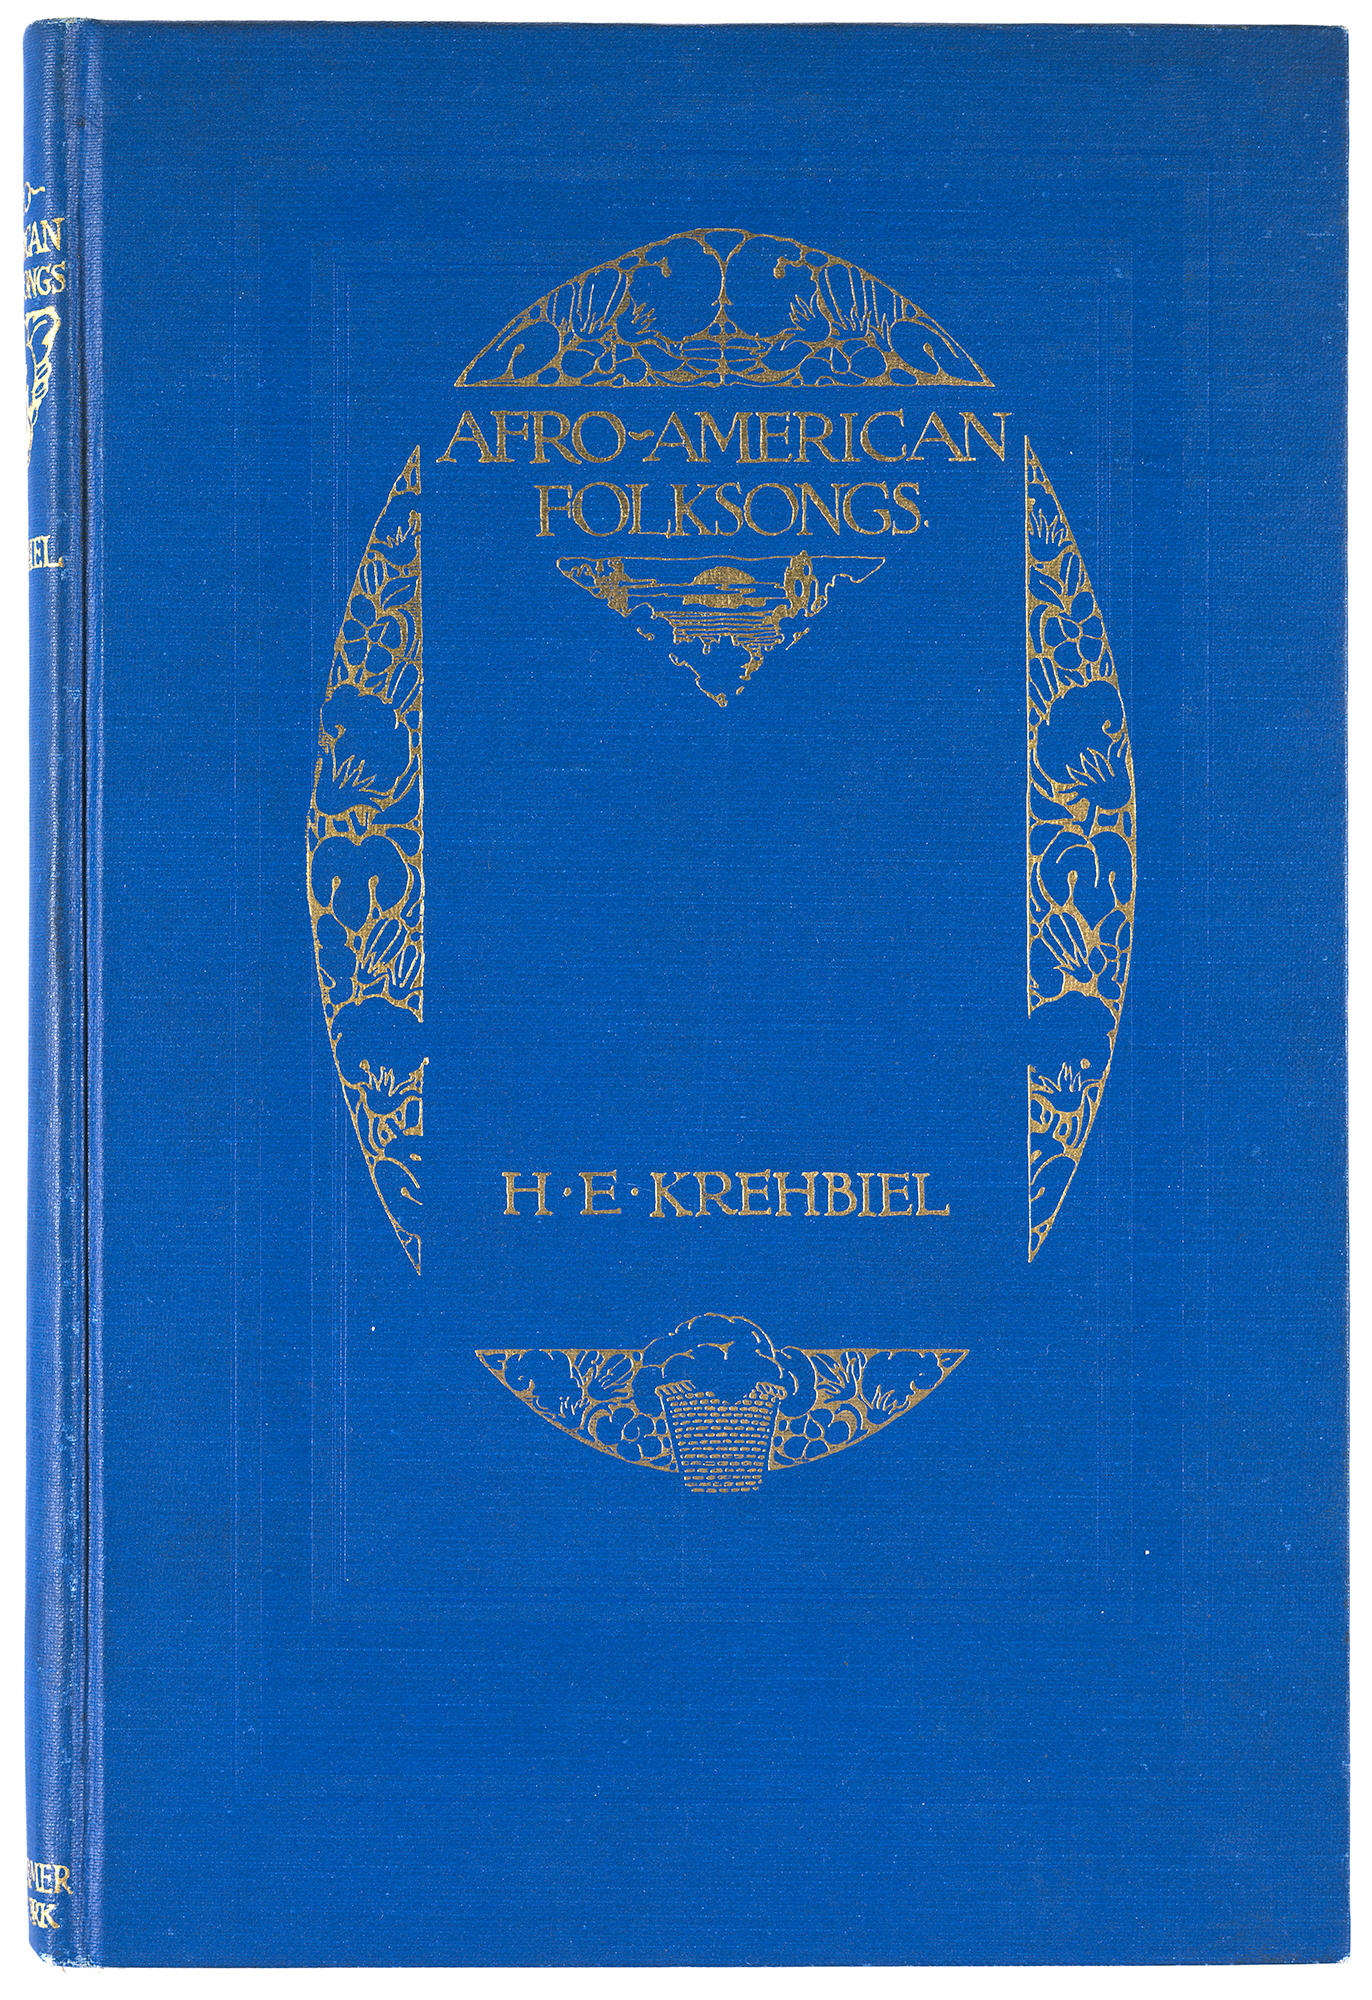 Henry Edward Krehbiel (American, 1854 - 1923), Afro-American Folk Songs, 1914.